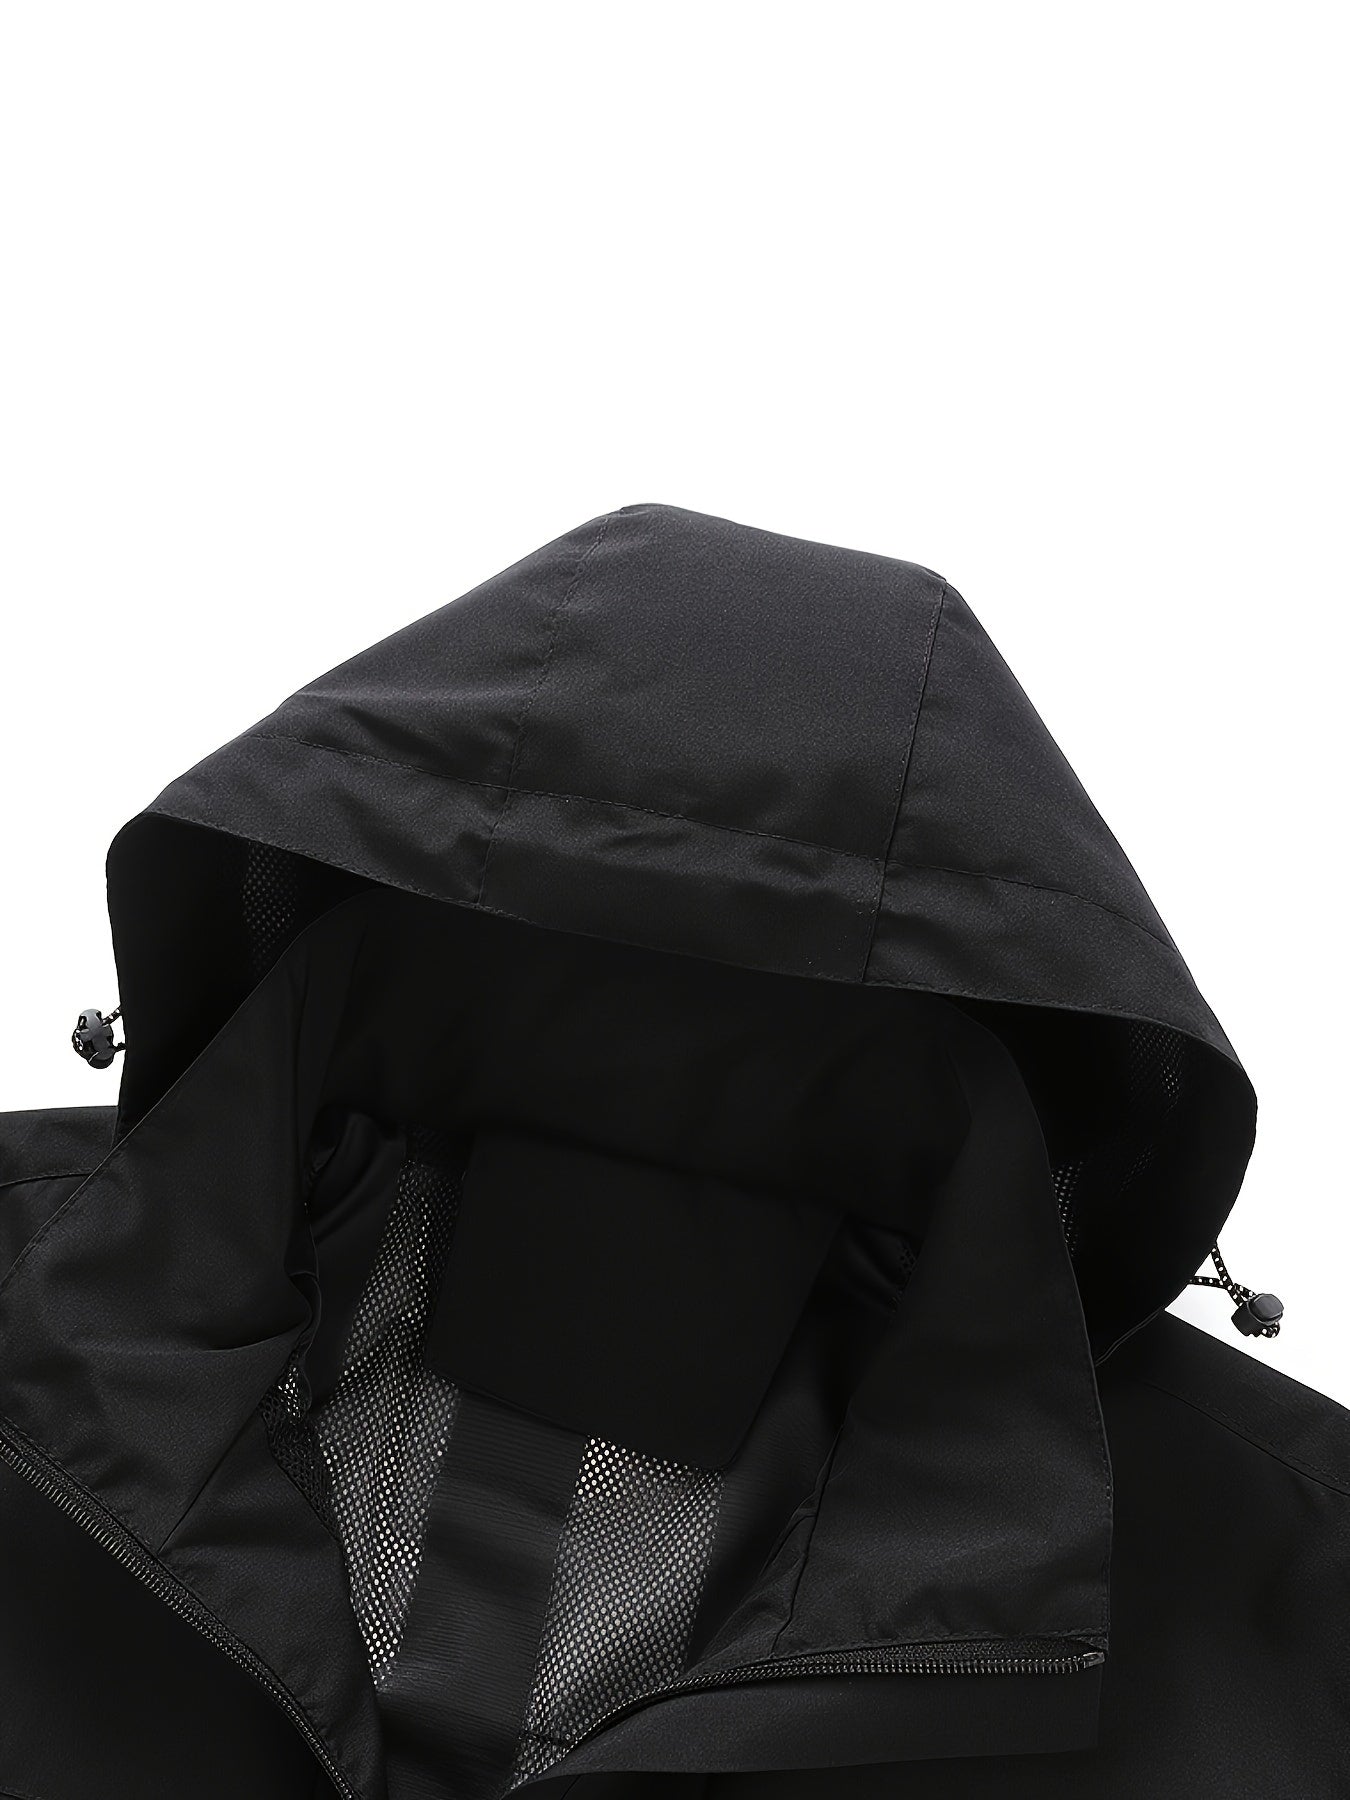 Lightweight Hooded Windbreaker for Men - Perfect for Outdoor Activities